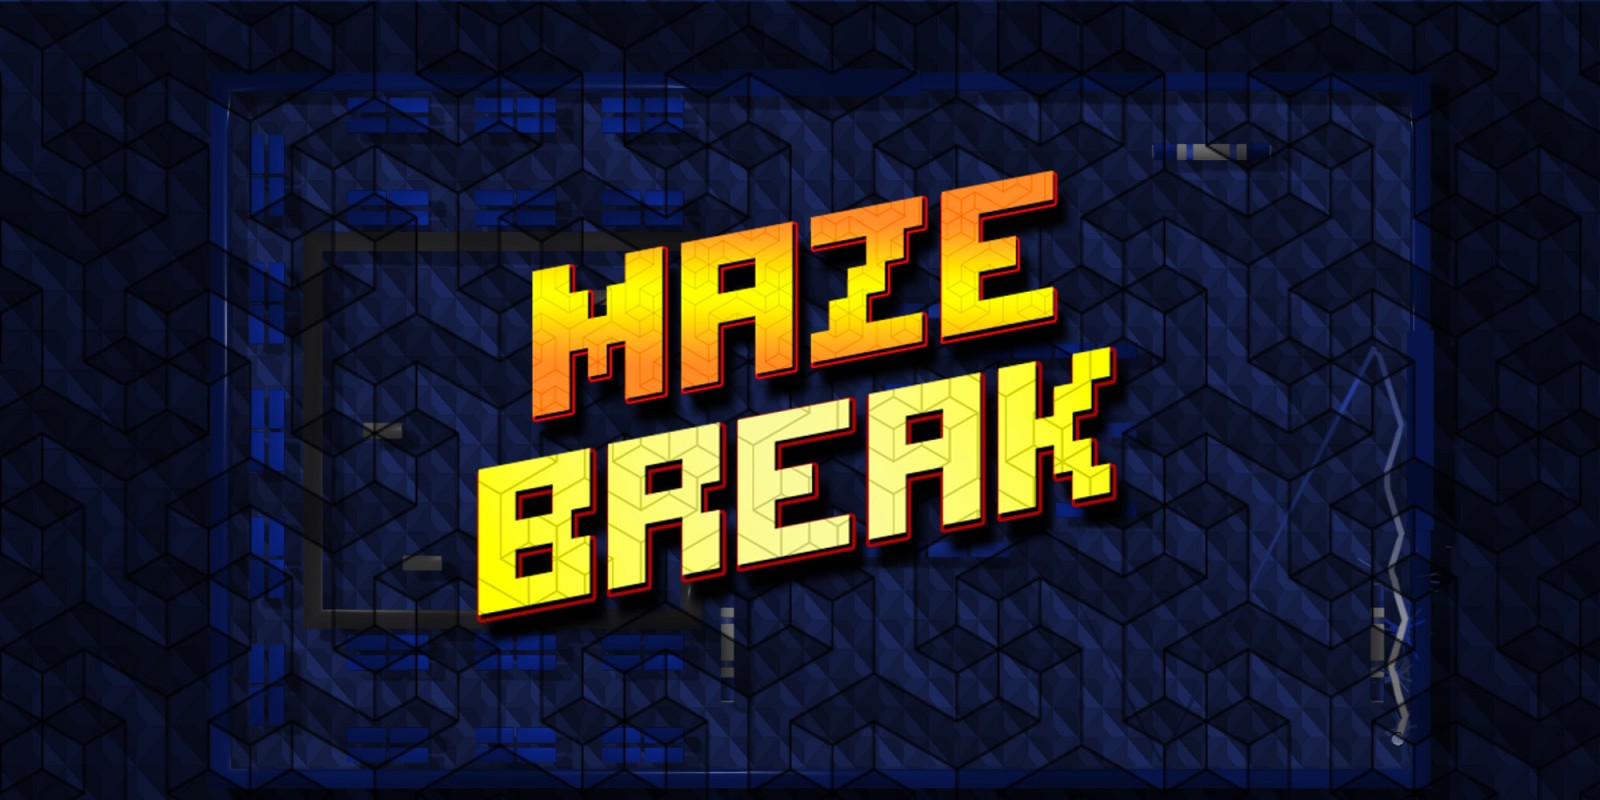 Maze Break